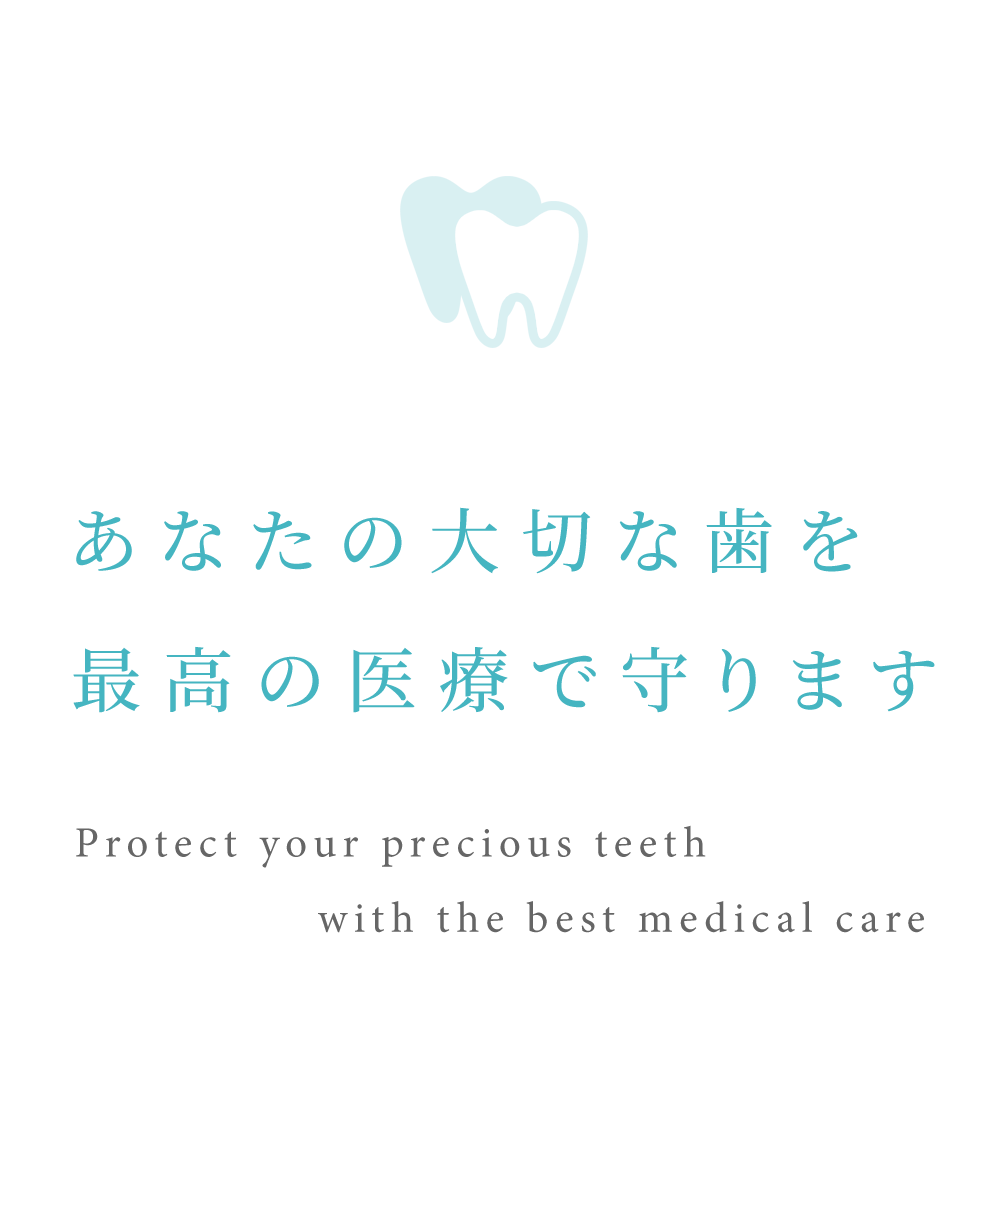 あなたの大切な歯を最高の医療で守ります